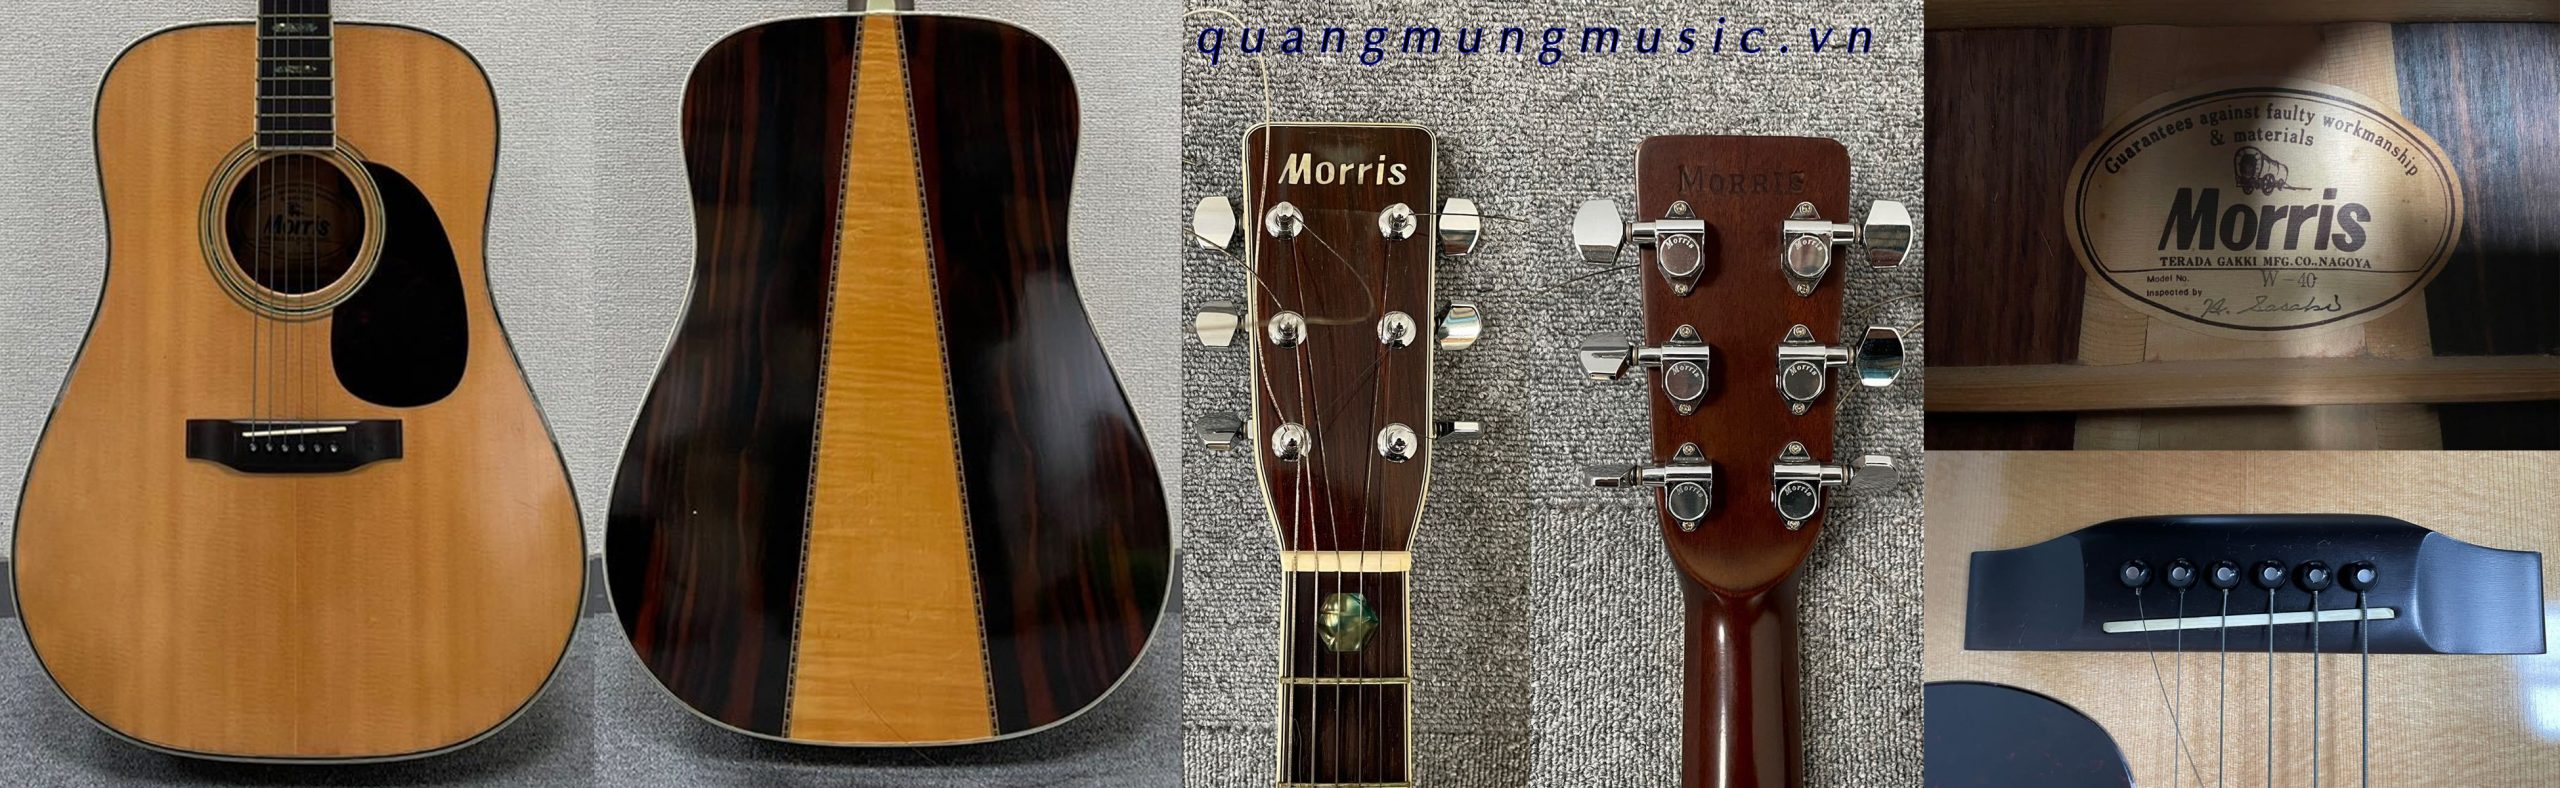 dan-guitar-acoustic-morris-w40